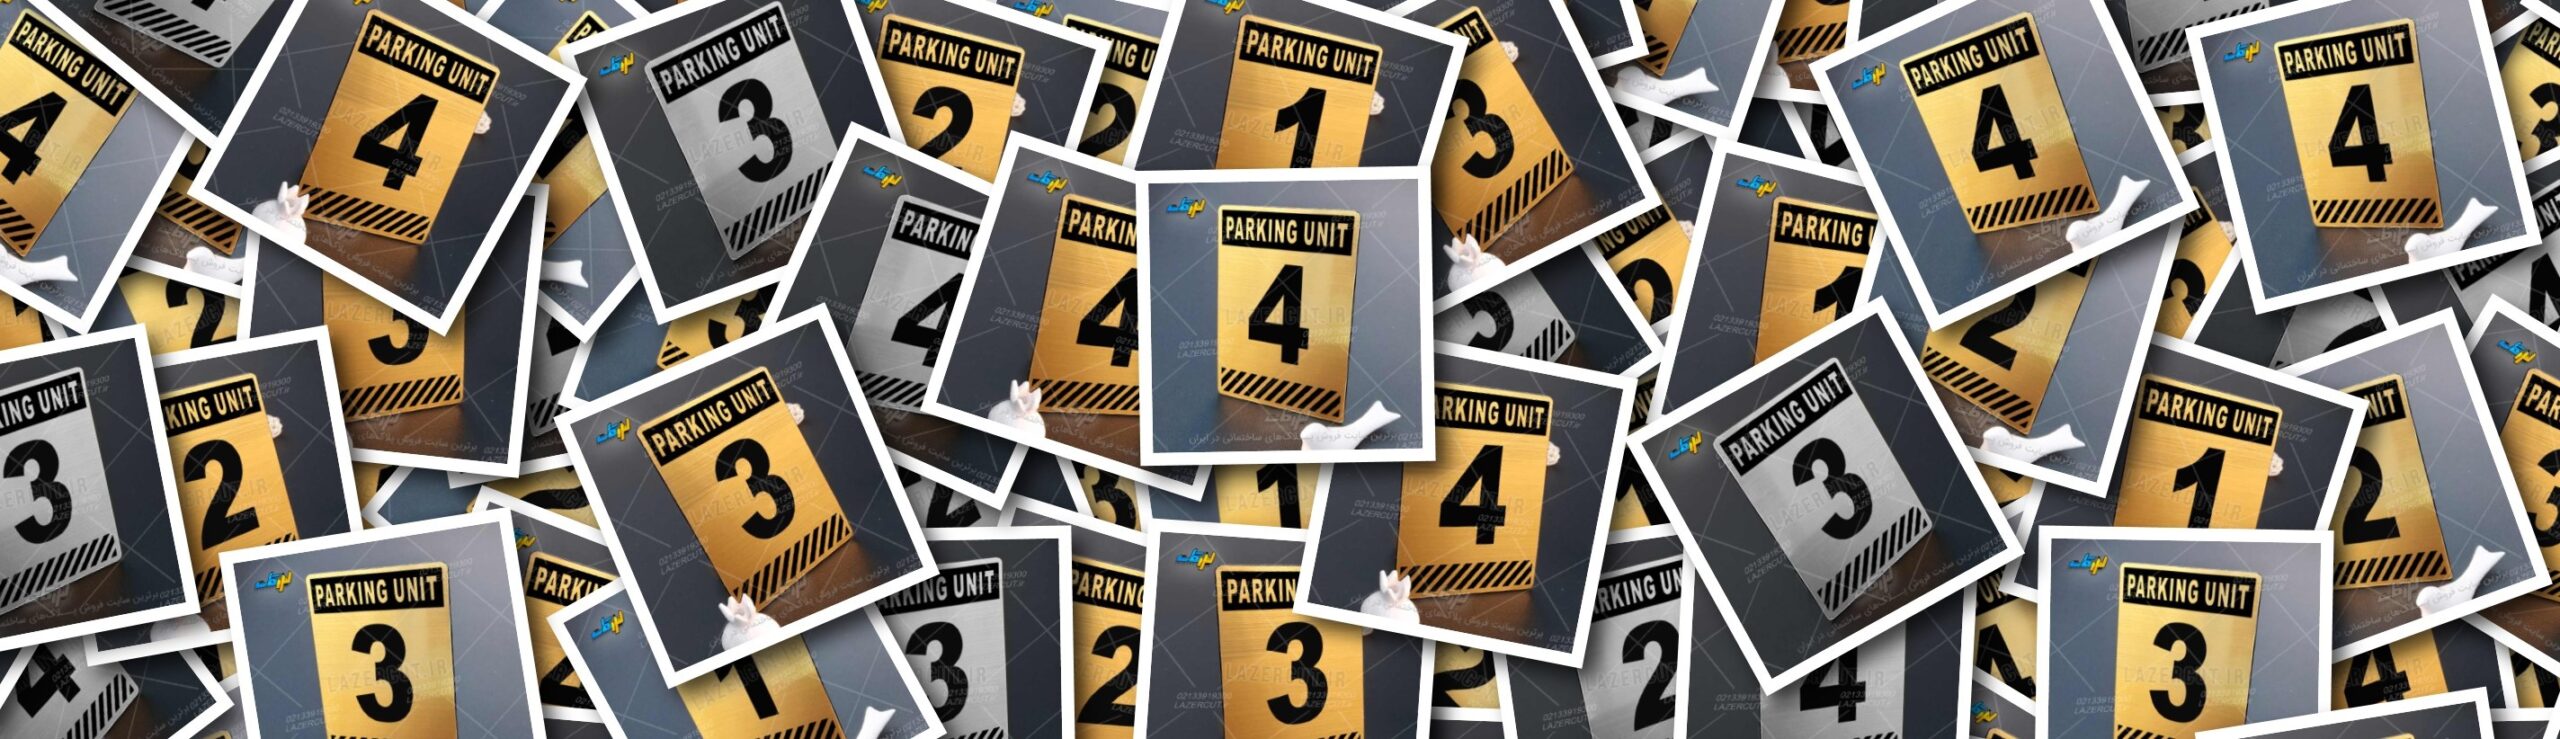 نمونه‌های تابلو شماره واحد پارکینگ - لیزرکات